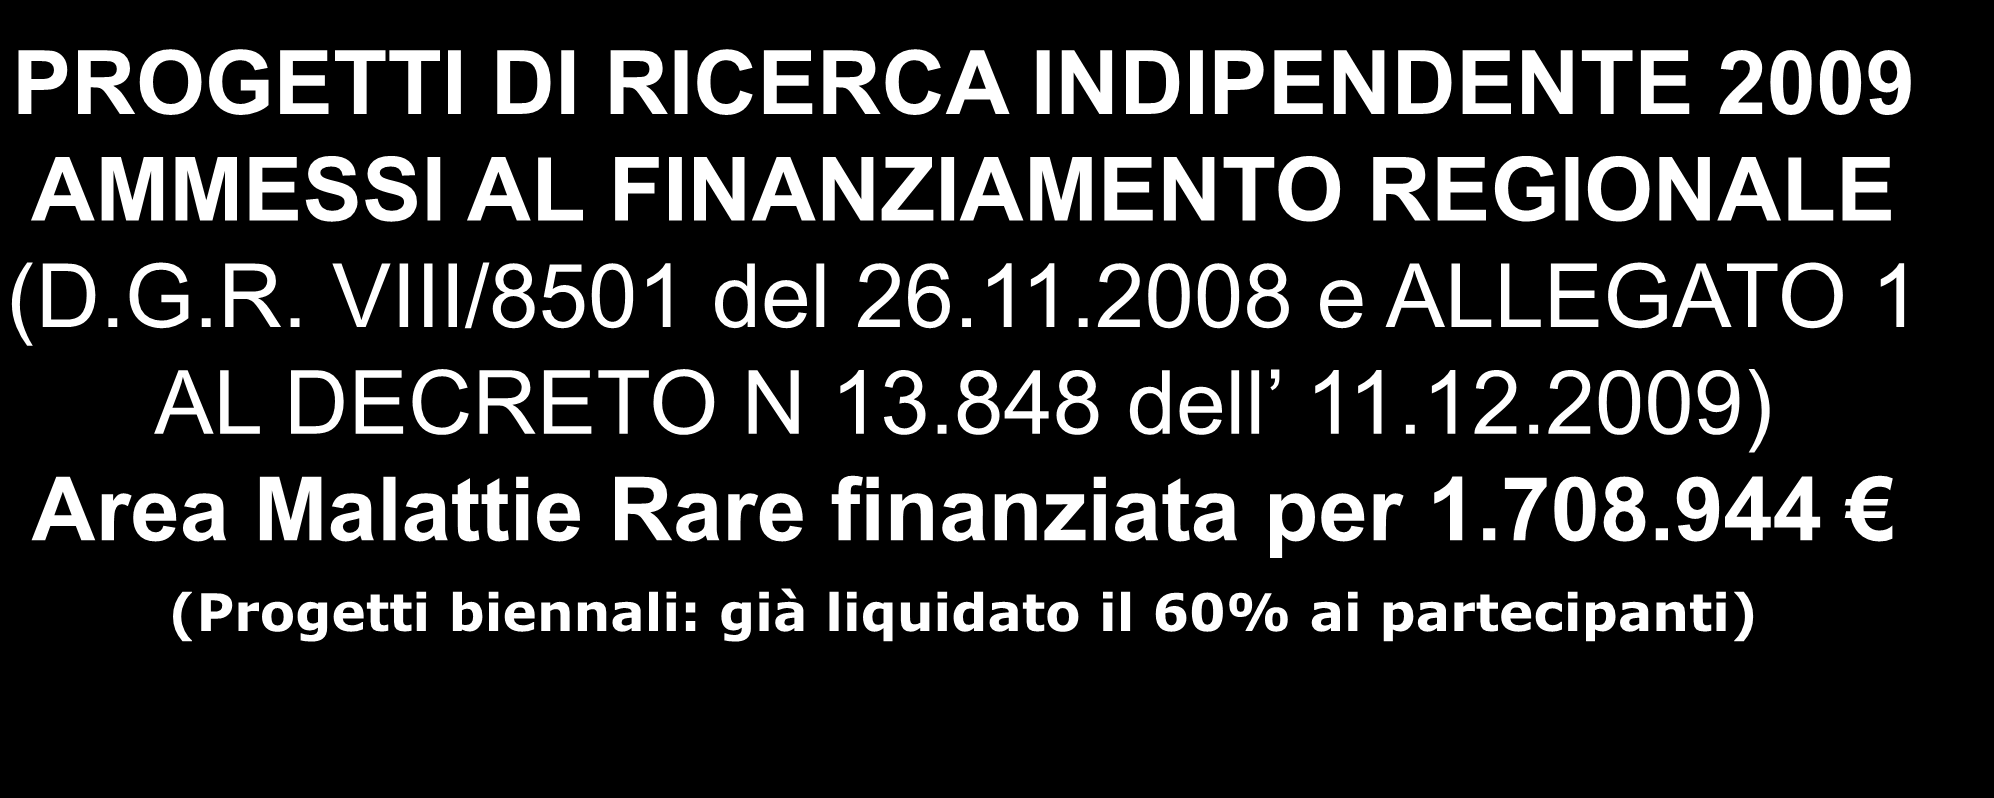 PROGETTI DI RICERCA INDIPENDENTE 2009 AMMESSI AL FINANZIAMENTO REGIONALE (D.G.R. VIII/8501 del 26.11.